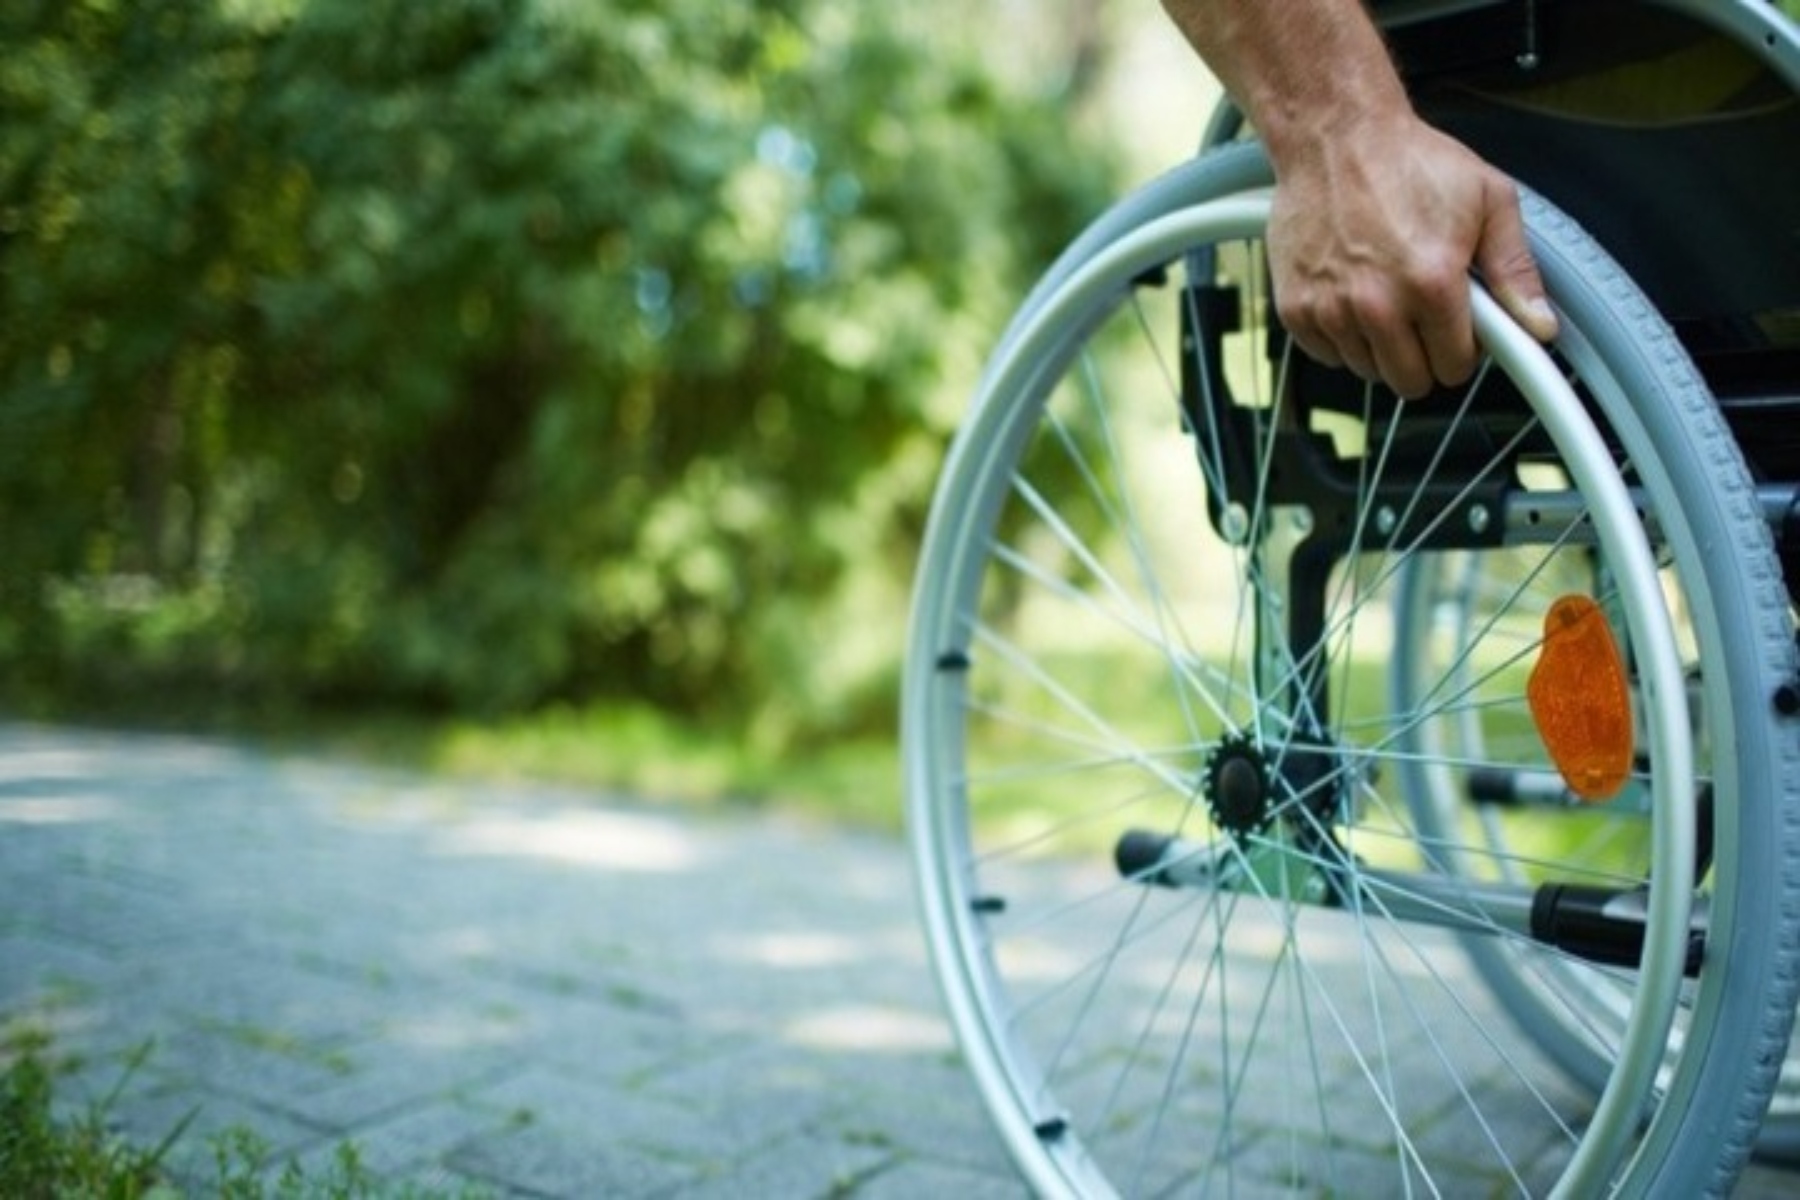 ΕΣΑμεΑ Μακεδονία: Επιδοτούμενο πρόγραμμα επαγγελματικής κατάρτισης για άτομα με αναπηρία και χρόνιες παθήσεις 30 – 64 ετών